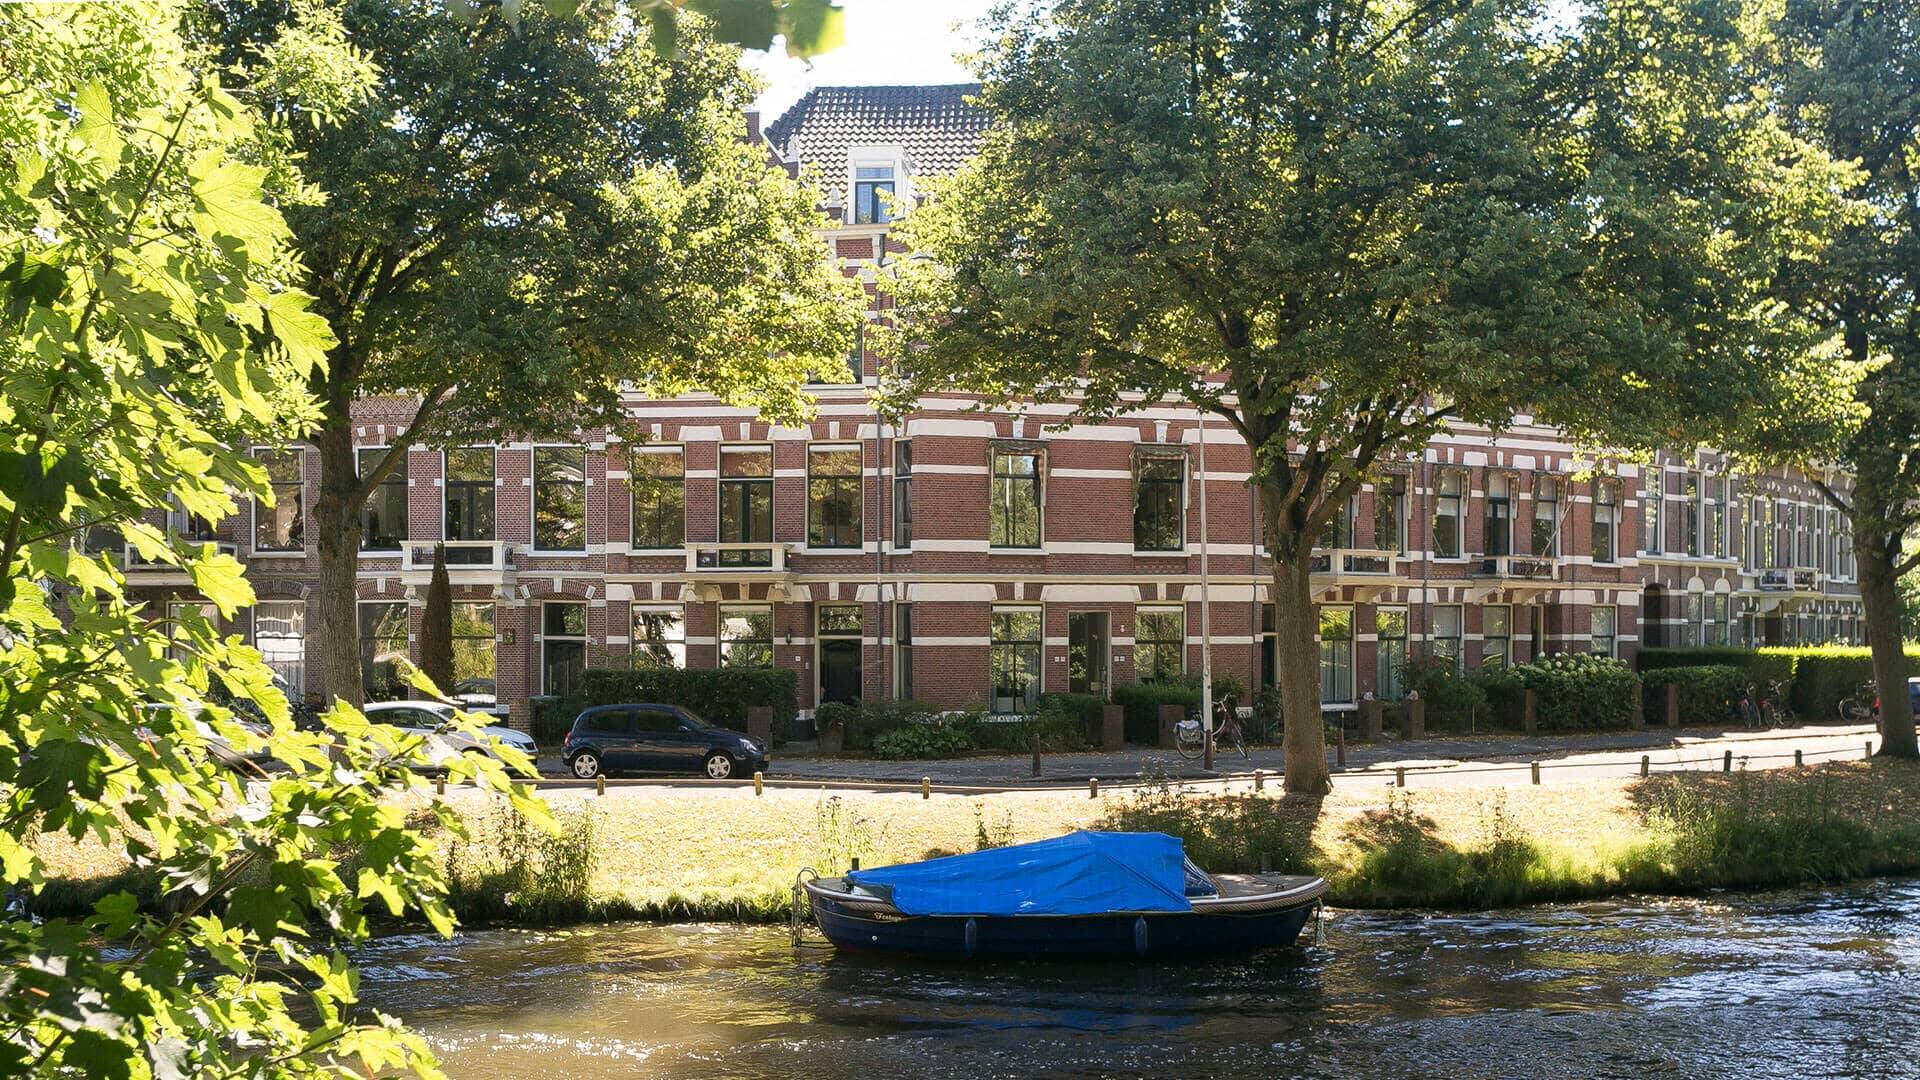 Professorenwijk, Burgemeesterswijk en de Rijndijkbuurt